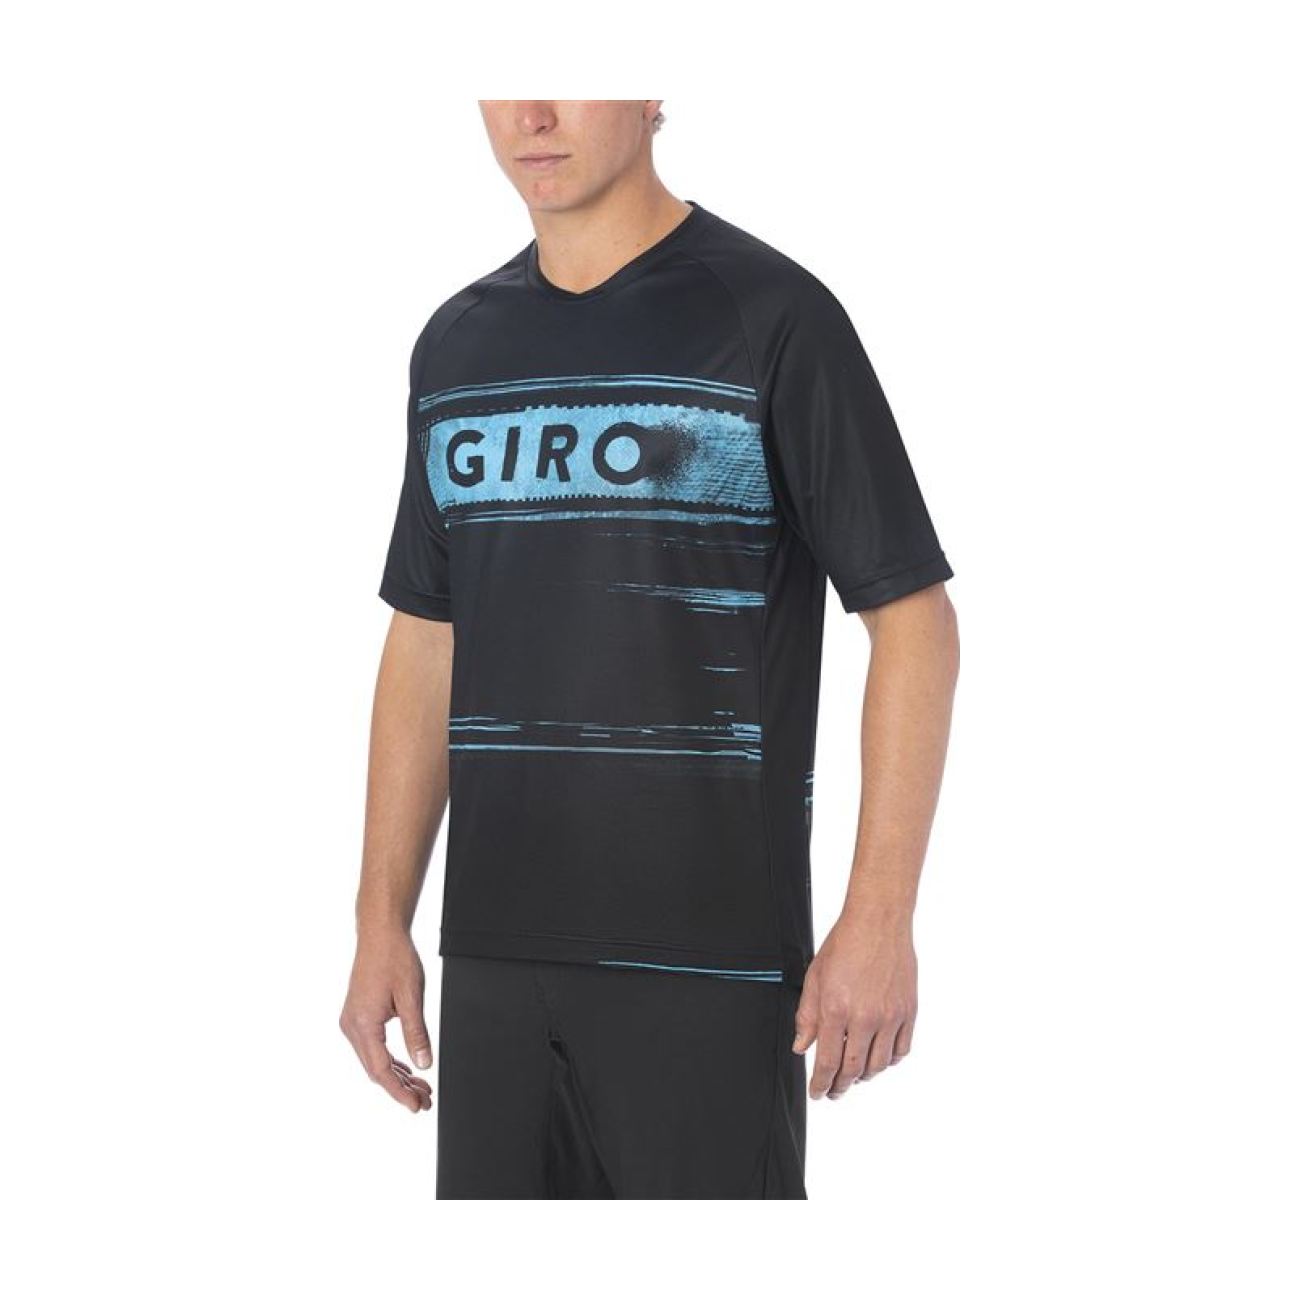 GIRO Koszulka Kolarska Z Krótkim Rękawem - ROUST - Czarny/jasnoniebieski